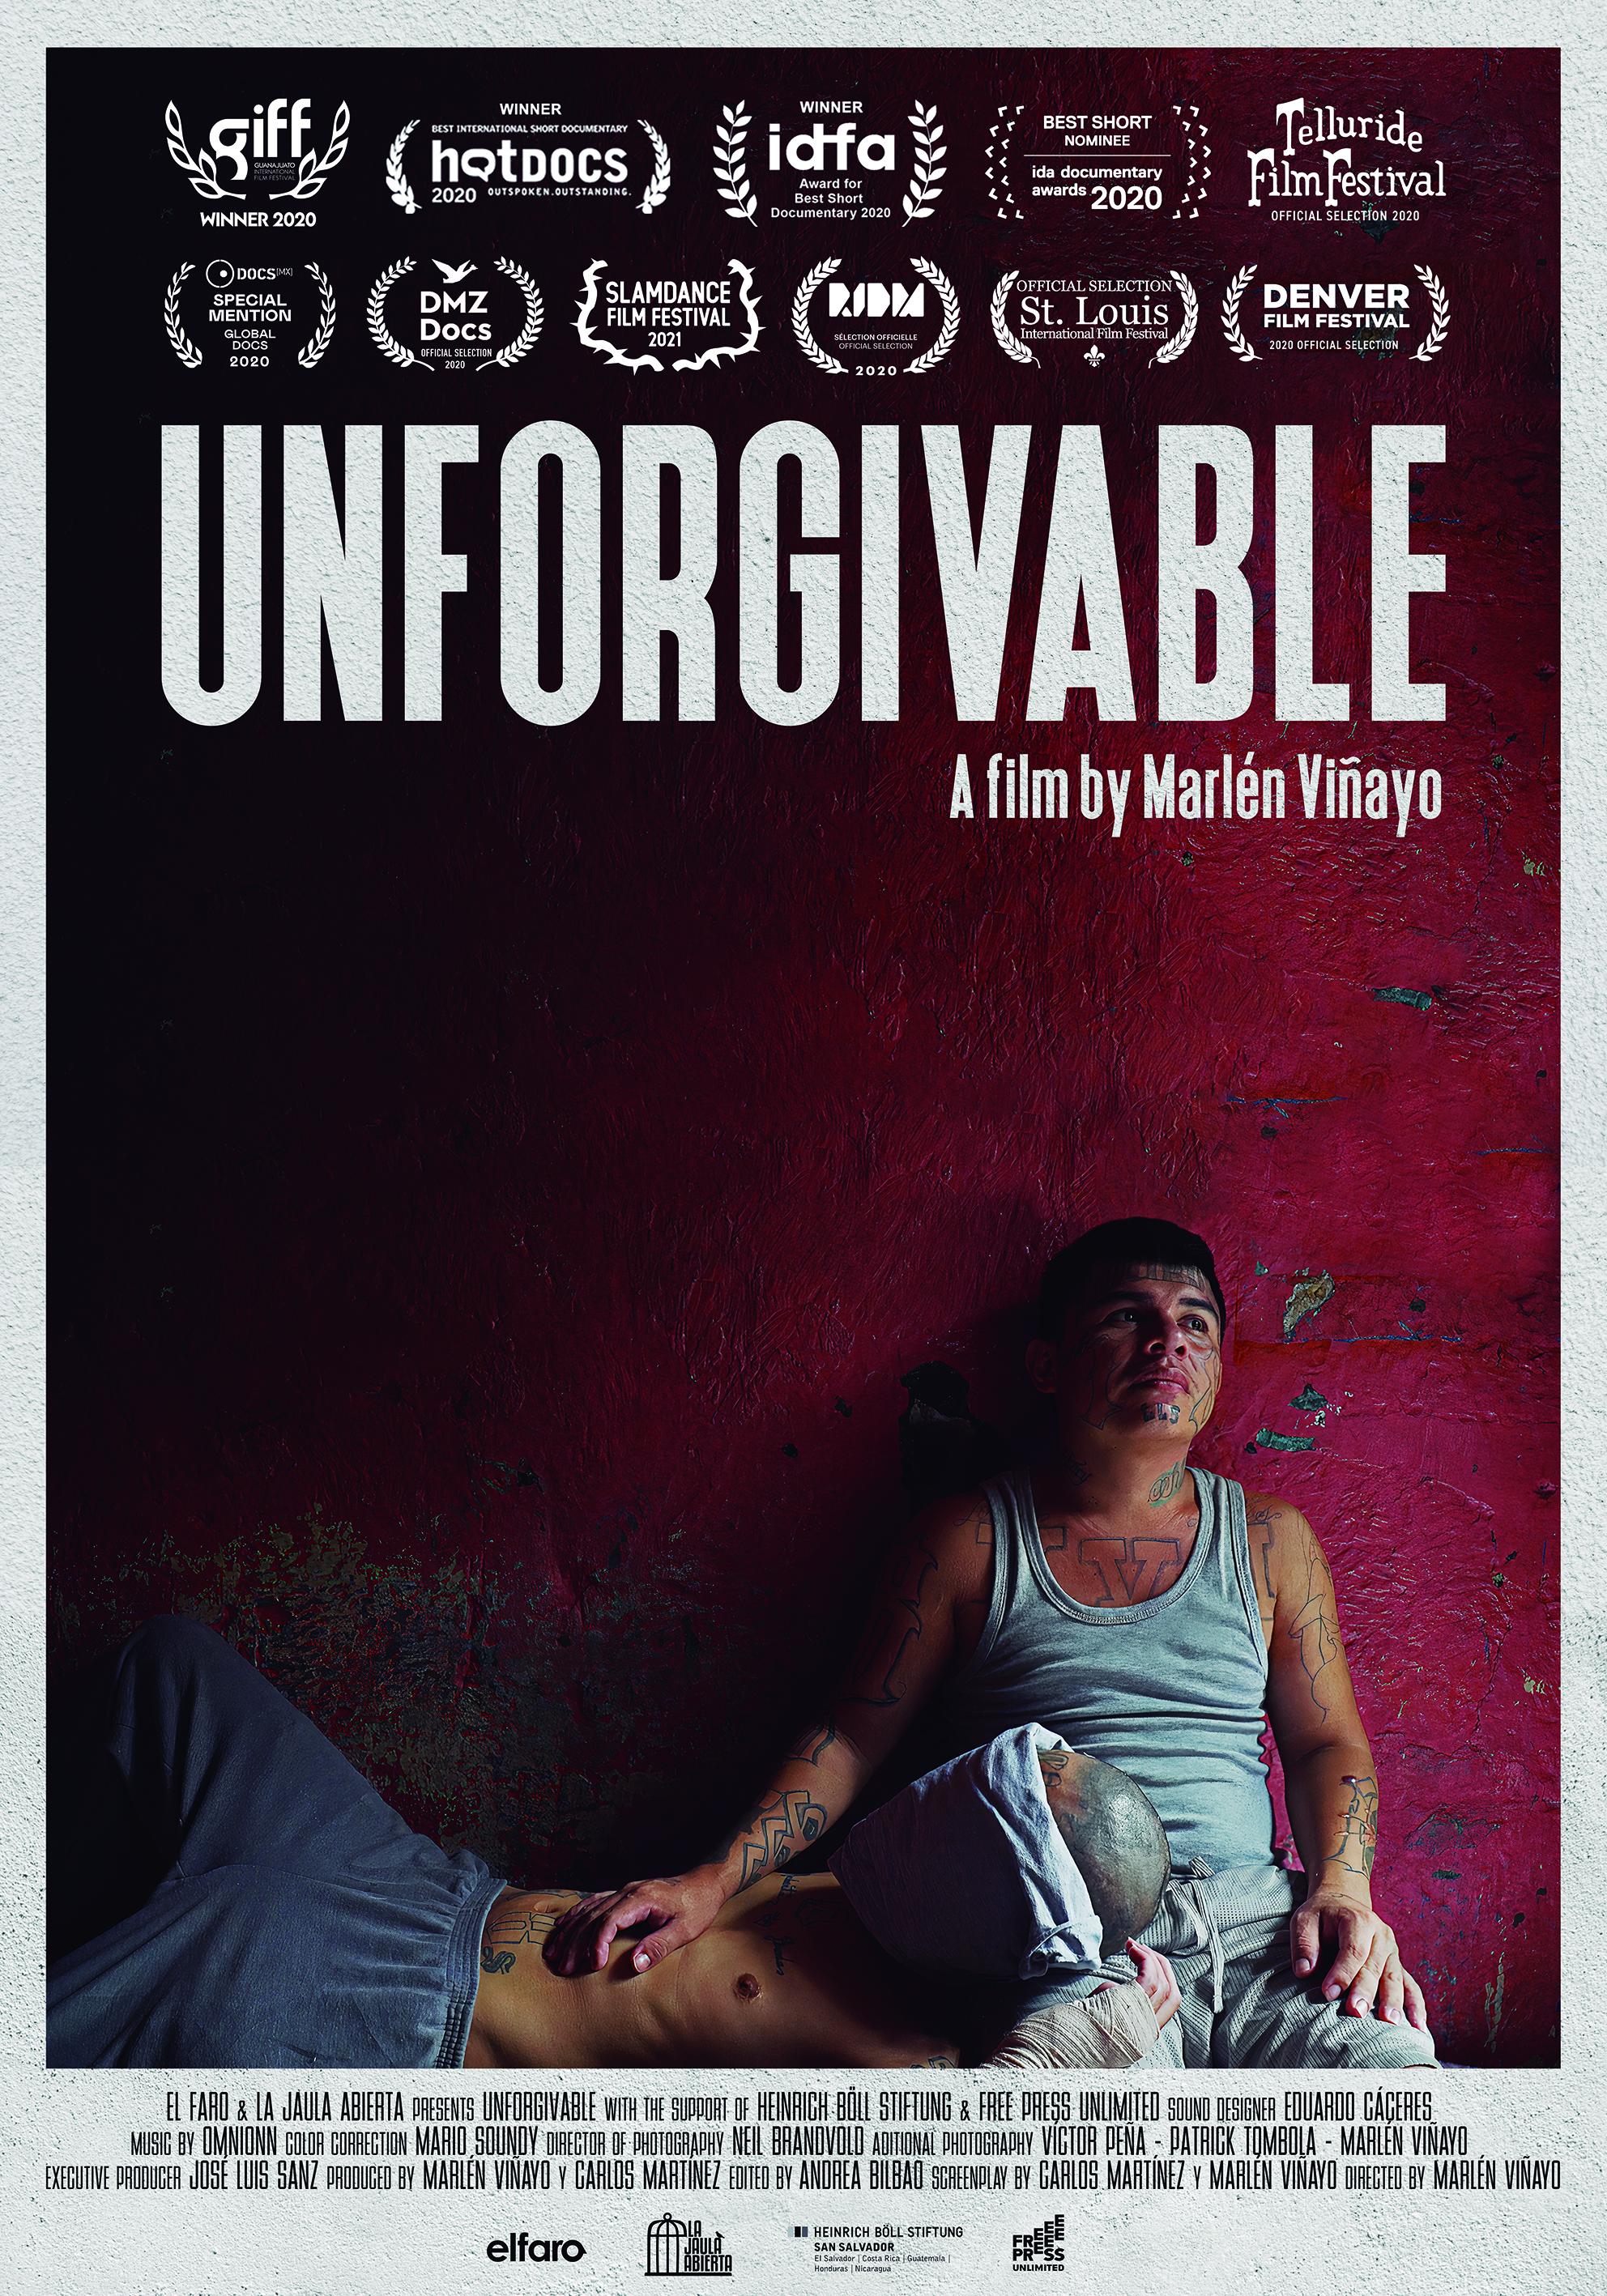 'Unforgivable' Official Film Poster